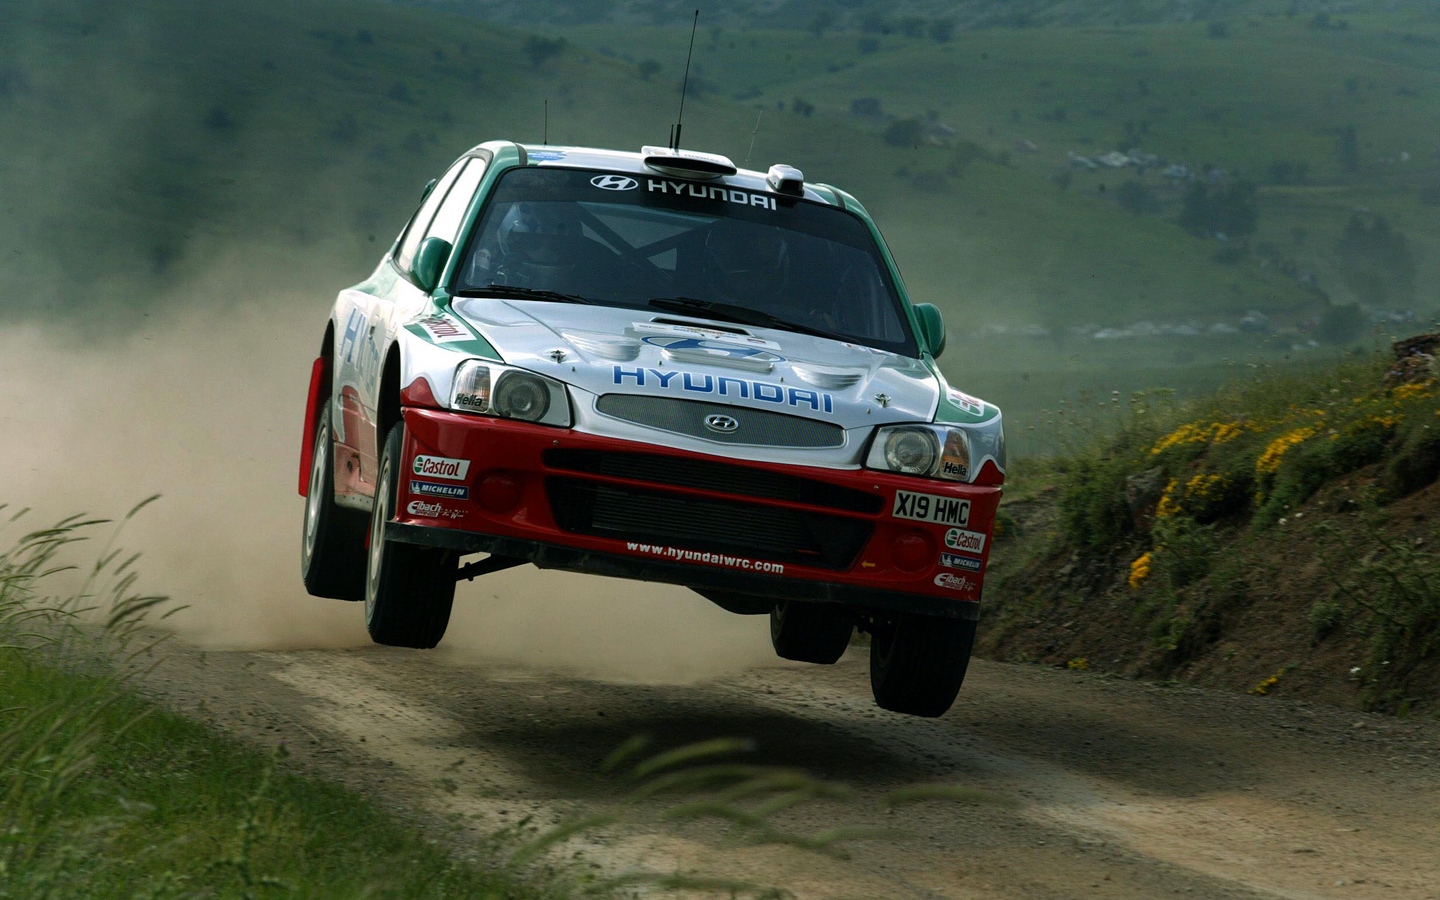 Hyundai WRC 2002 wrc_2002_hyundai_wrc_93930_1440x900